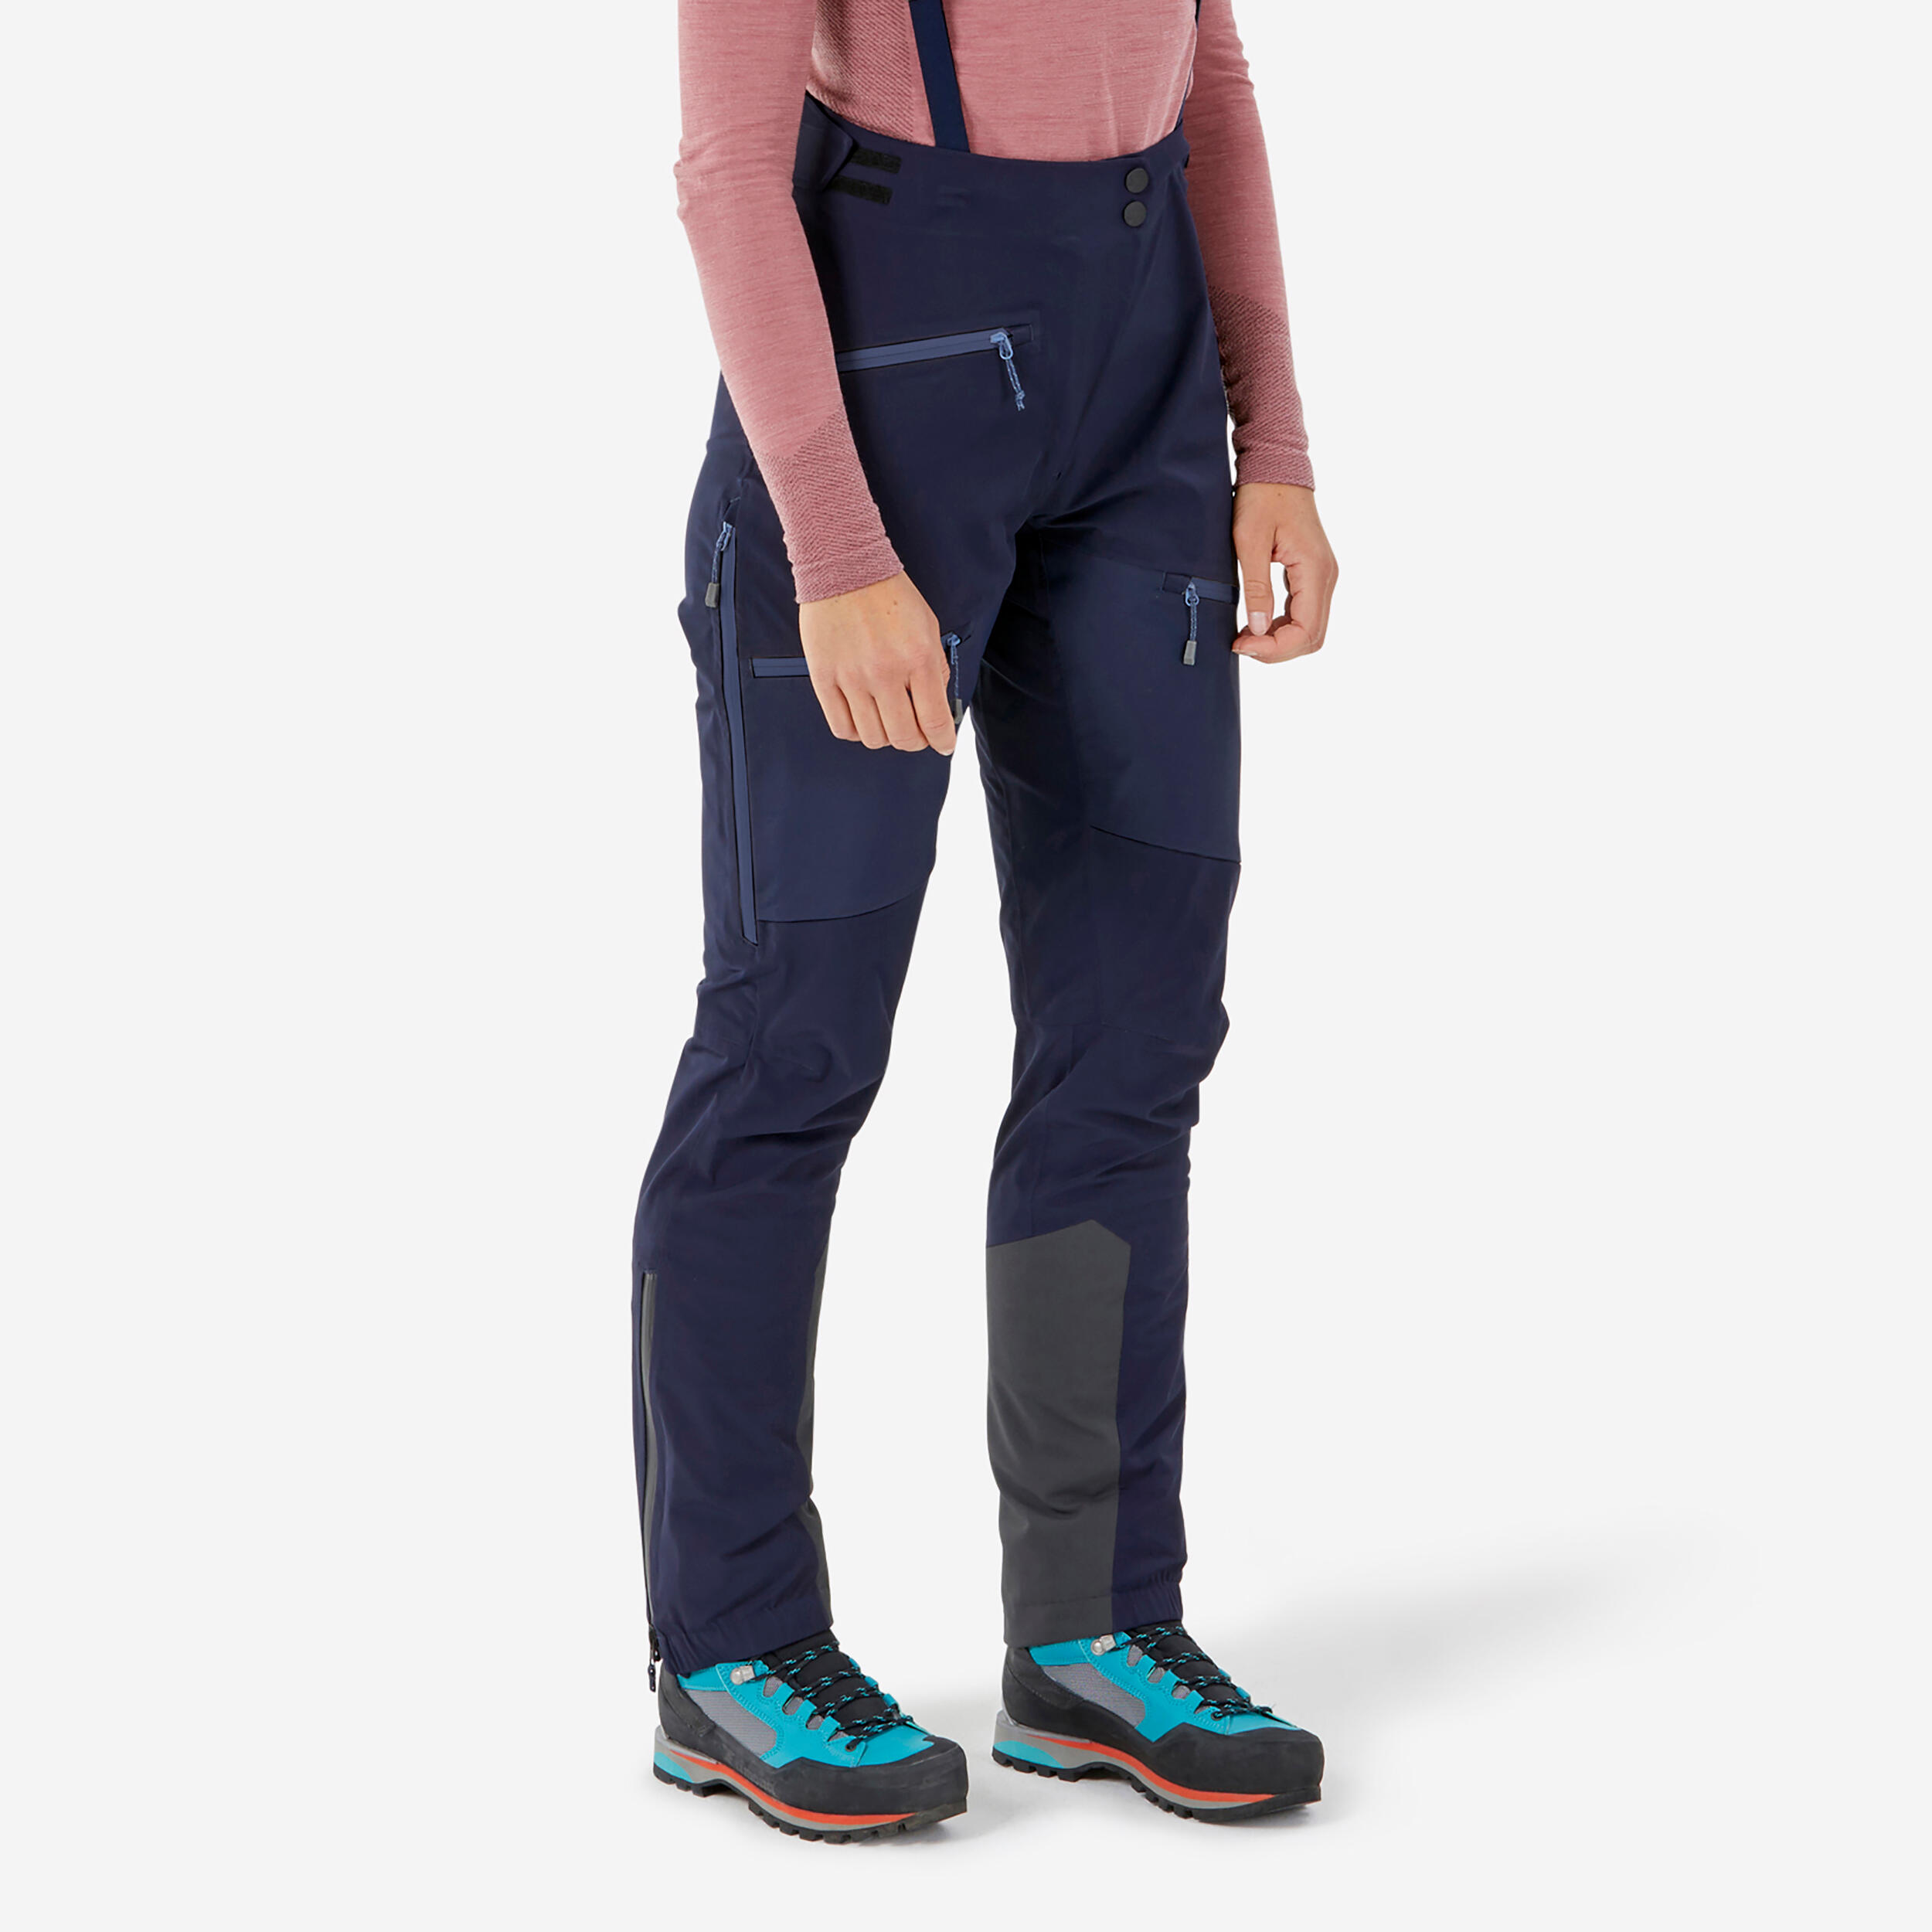 Simond Women's Mountaineering Waterproof Ice Trousers - Blue Black